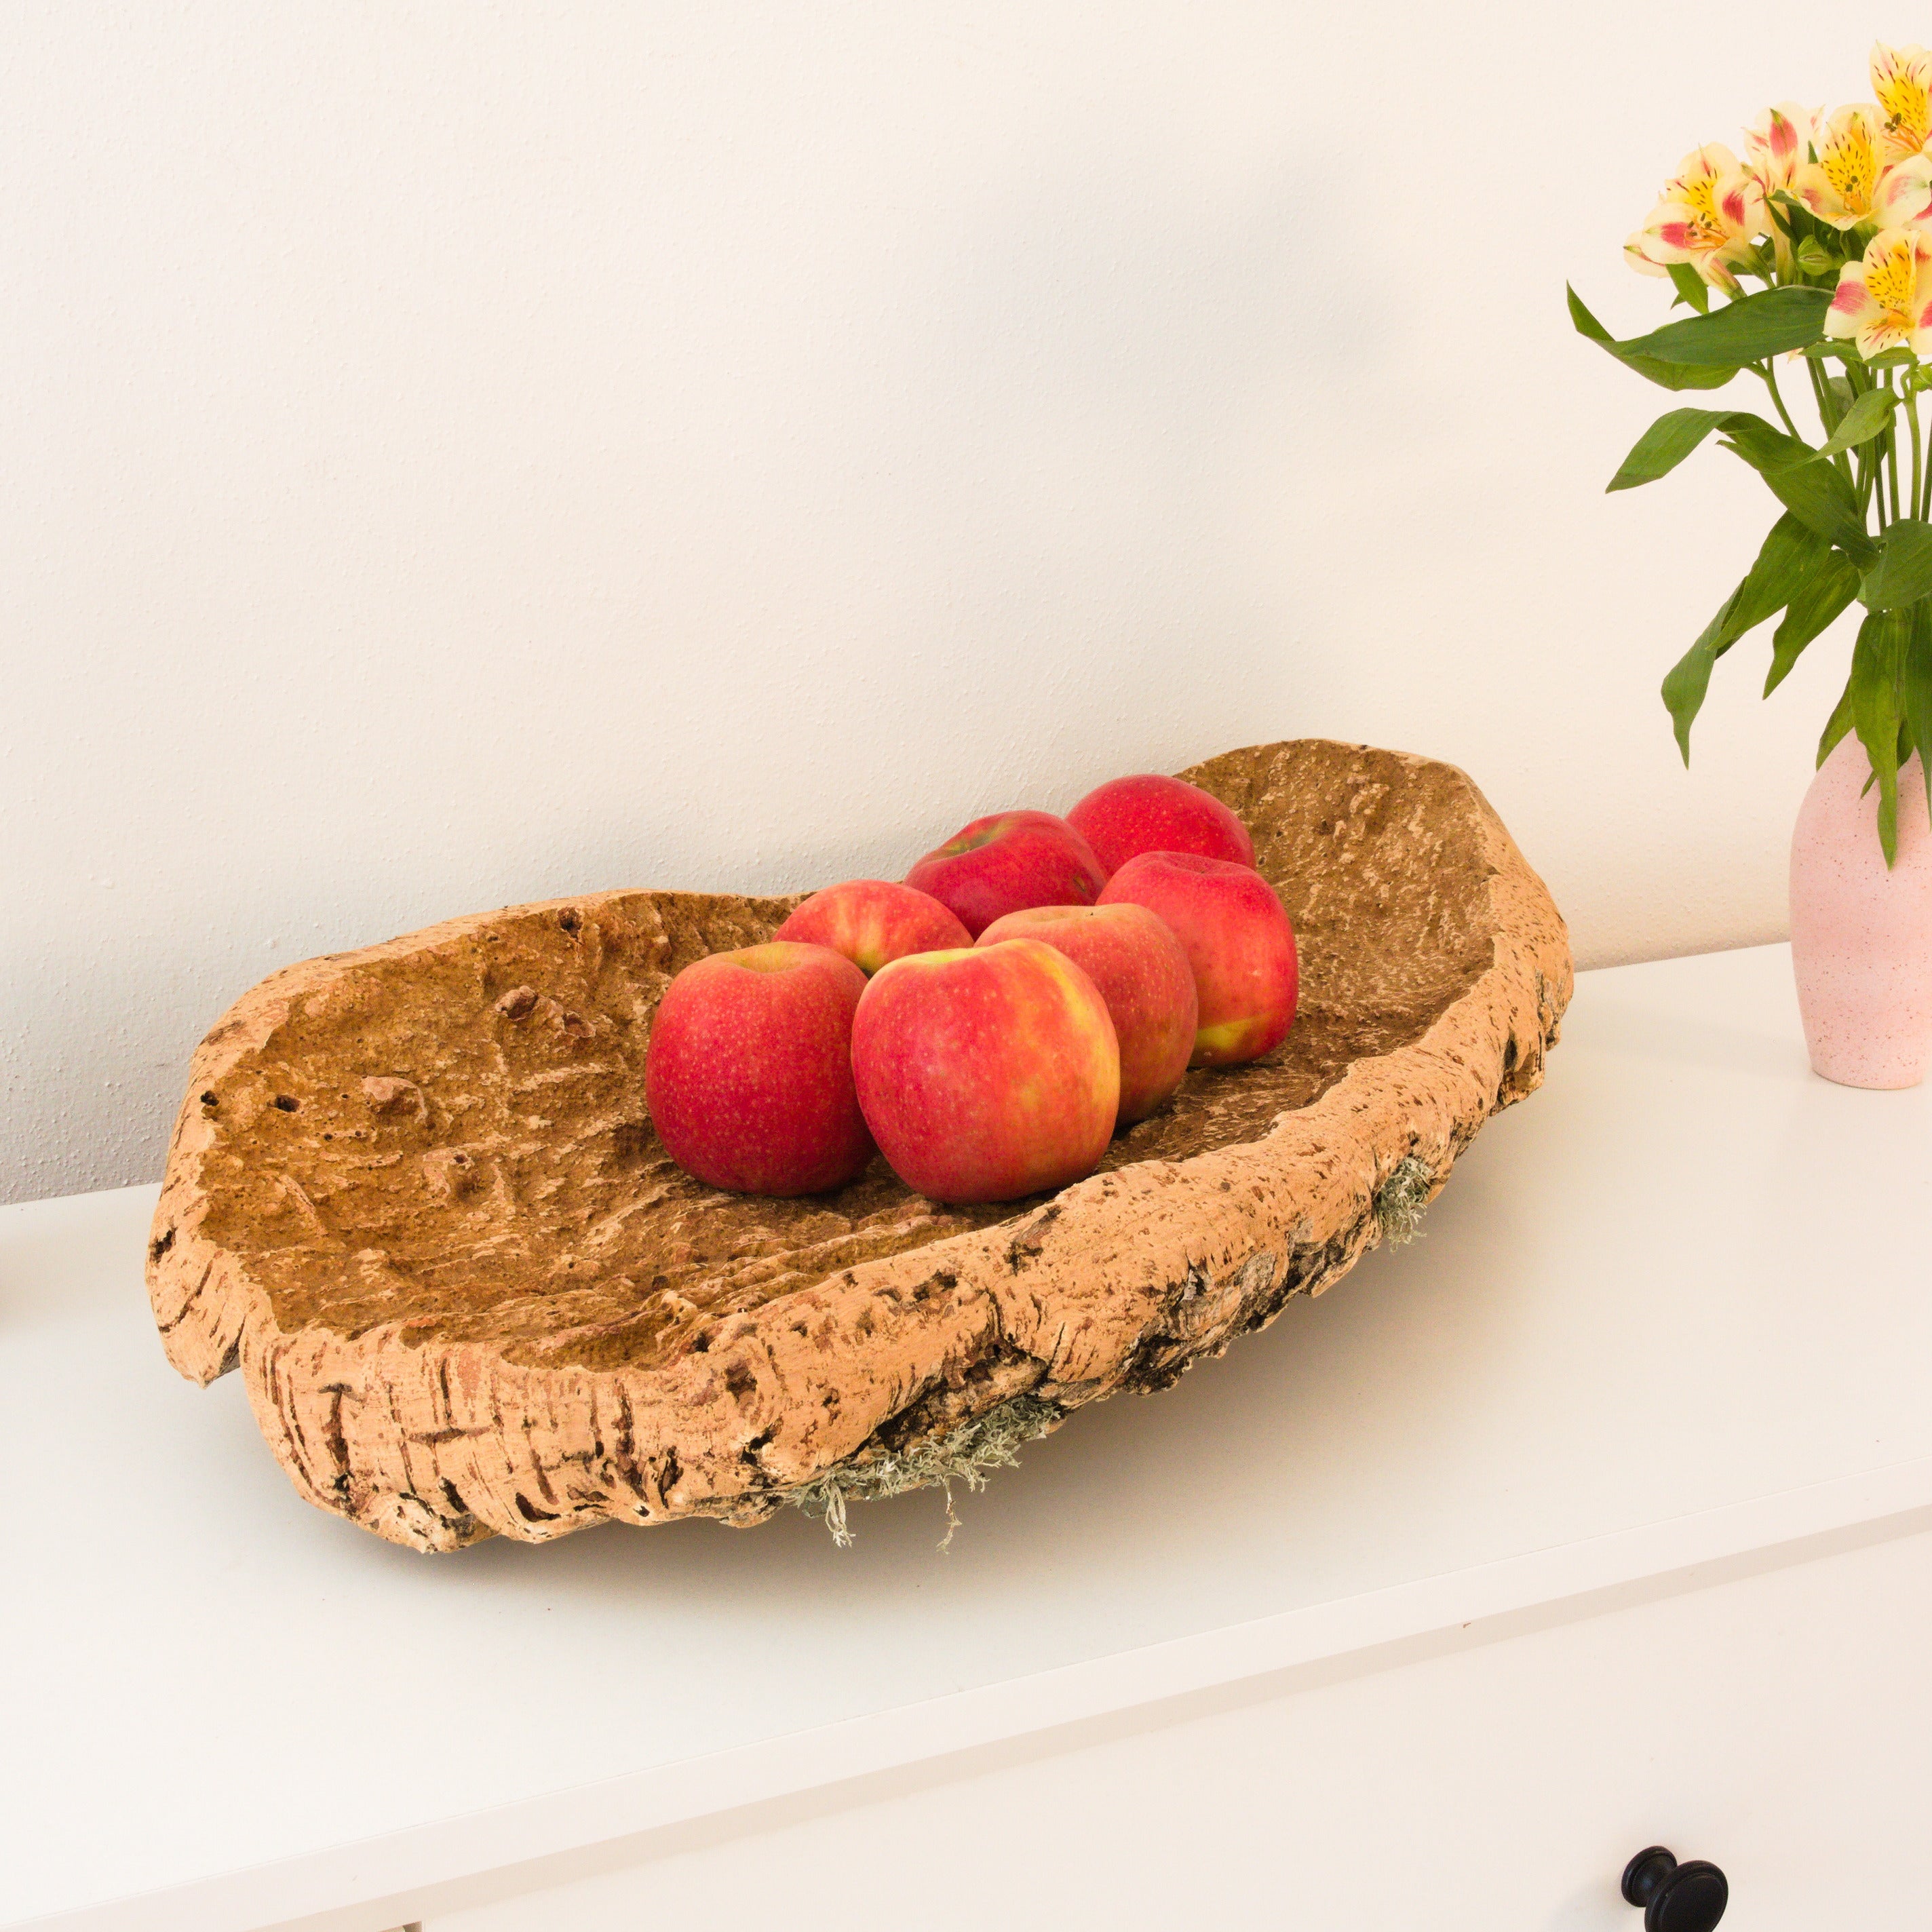 verKORKst premium fruit bowl made of cork bark * bread basket fruit basket decorative kitchen * rustic decoration * high-quality cork bowl